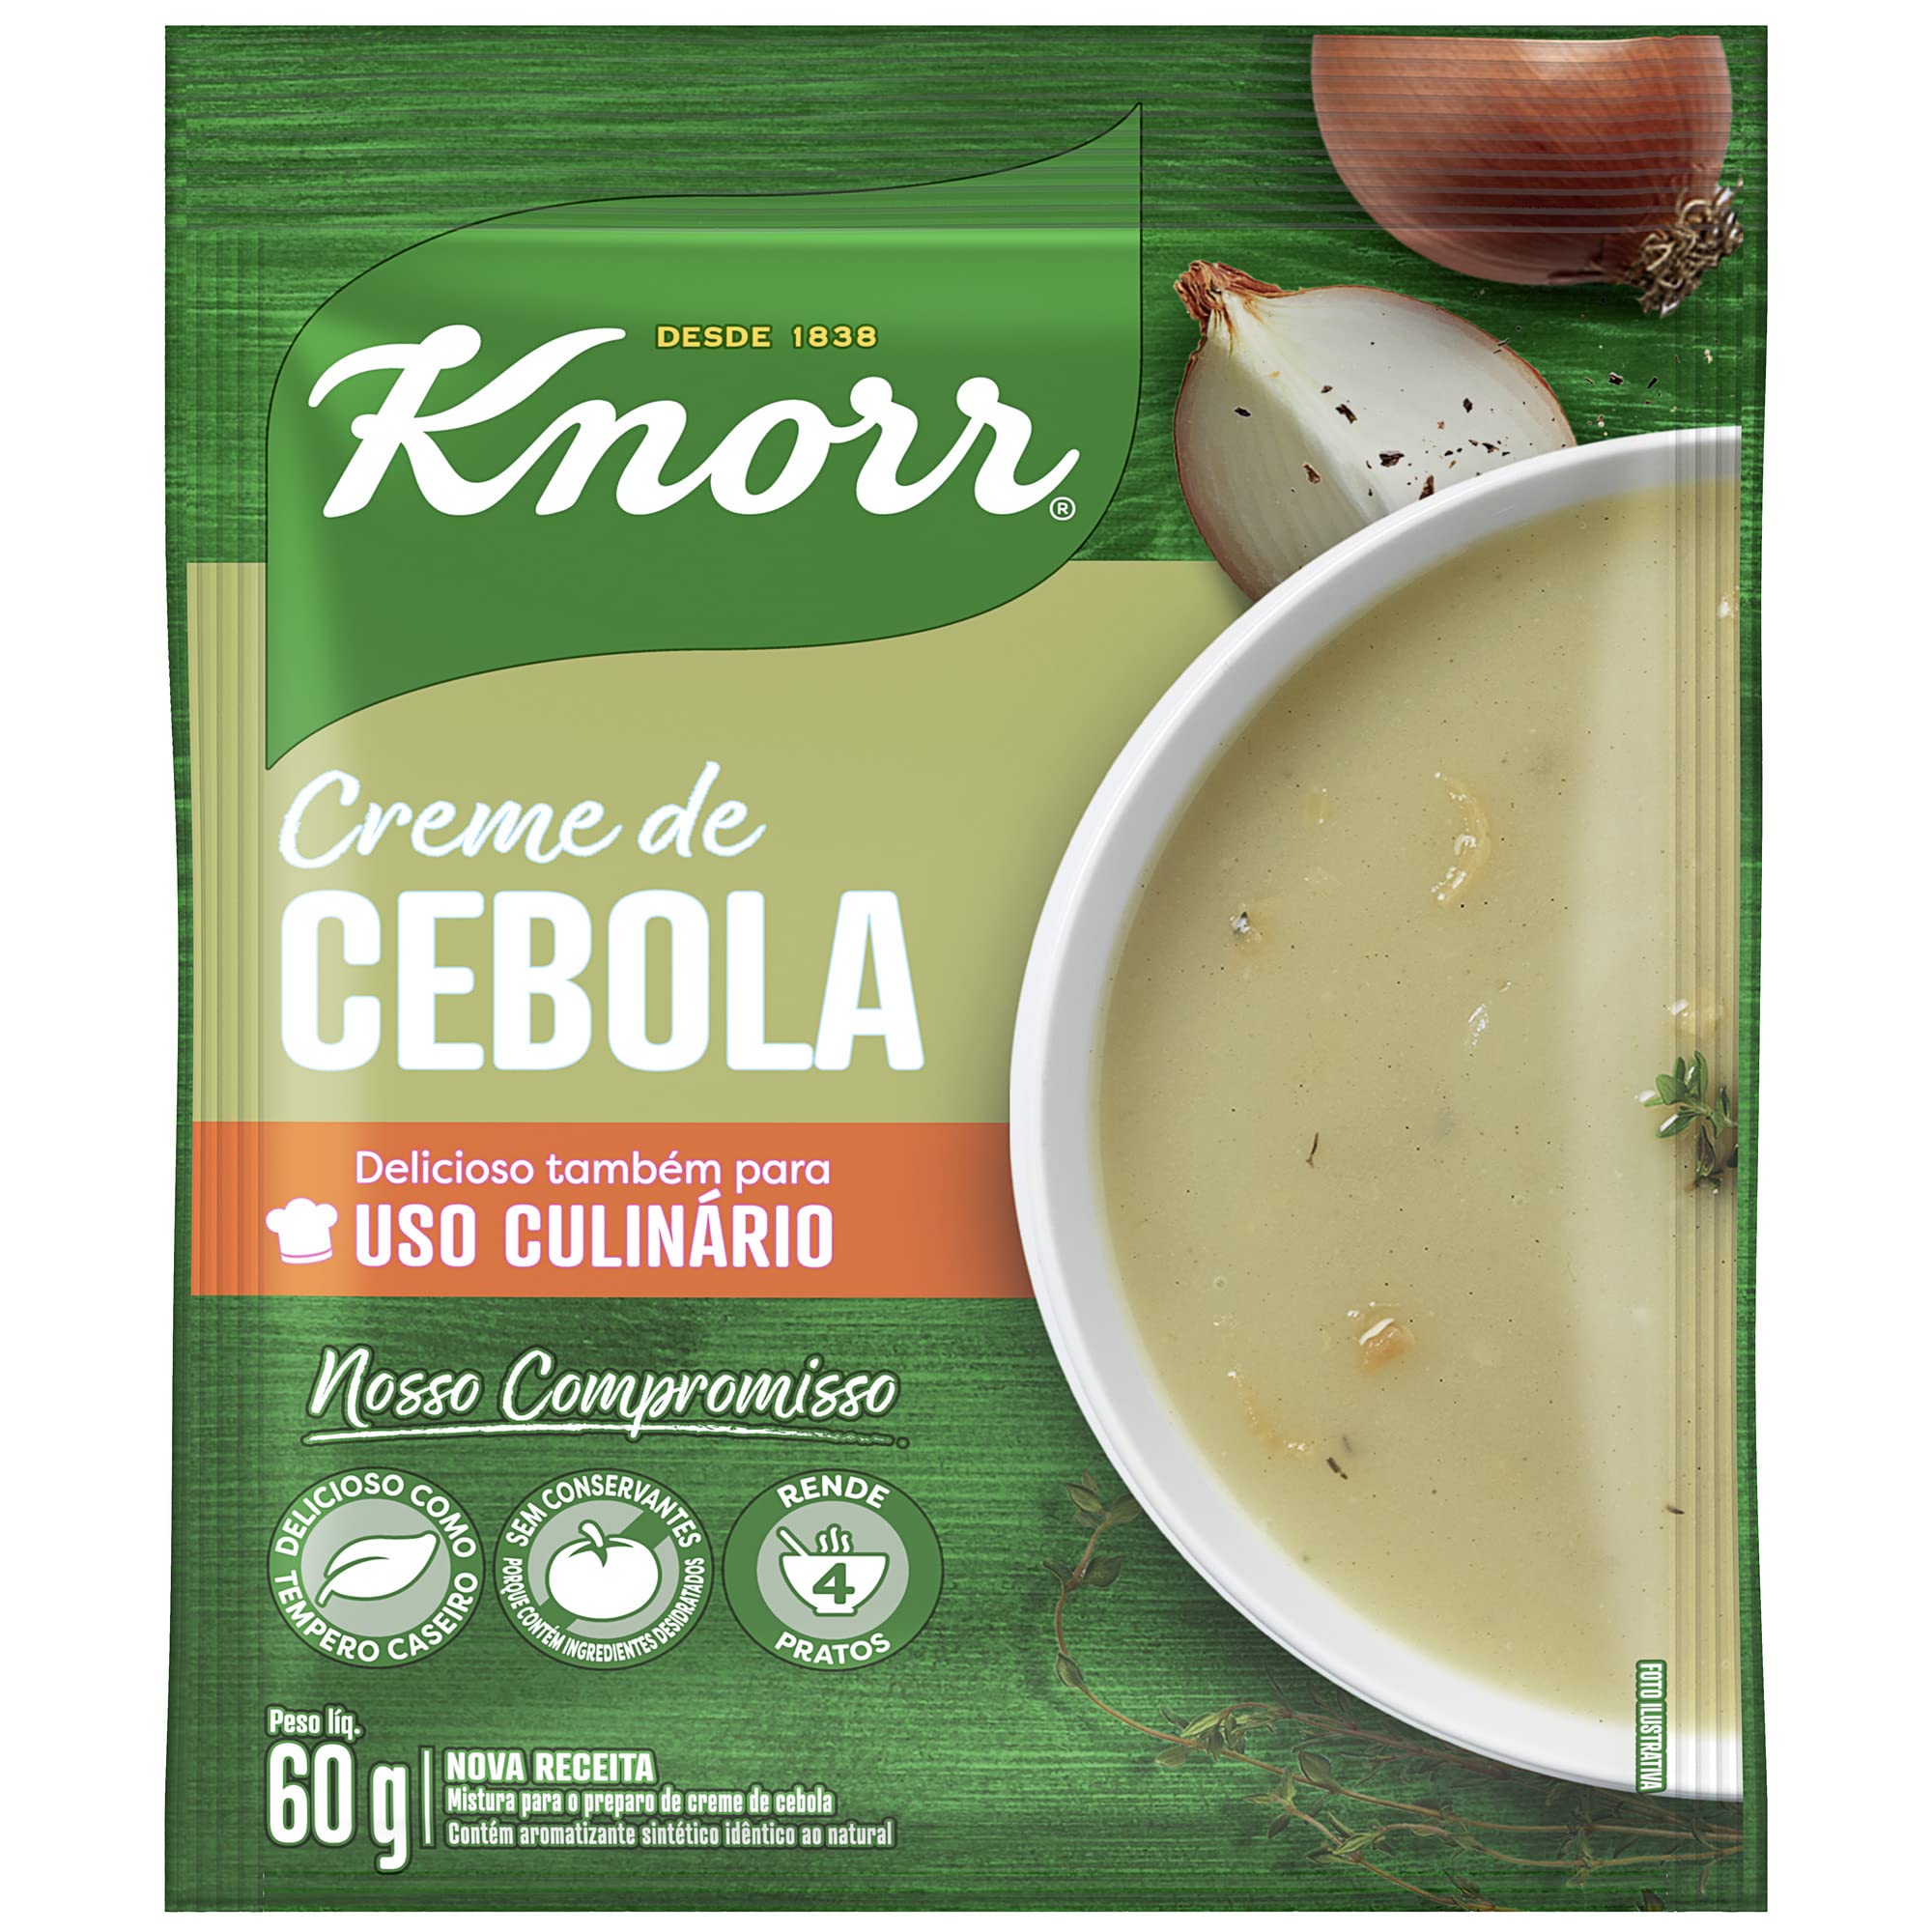 KNORR – Creme de Cebola - 60g - VENDA FINAL - EXPIRADO ou PERTO DE EXPIRAR